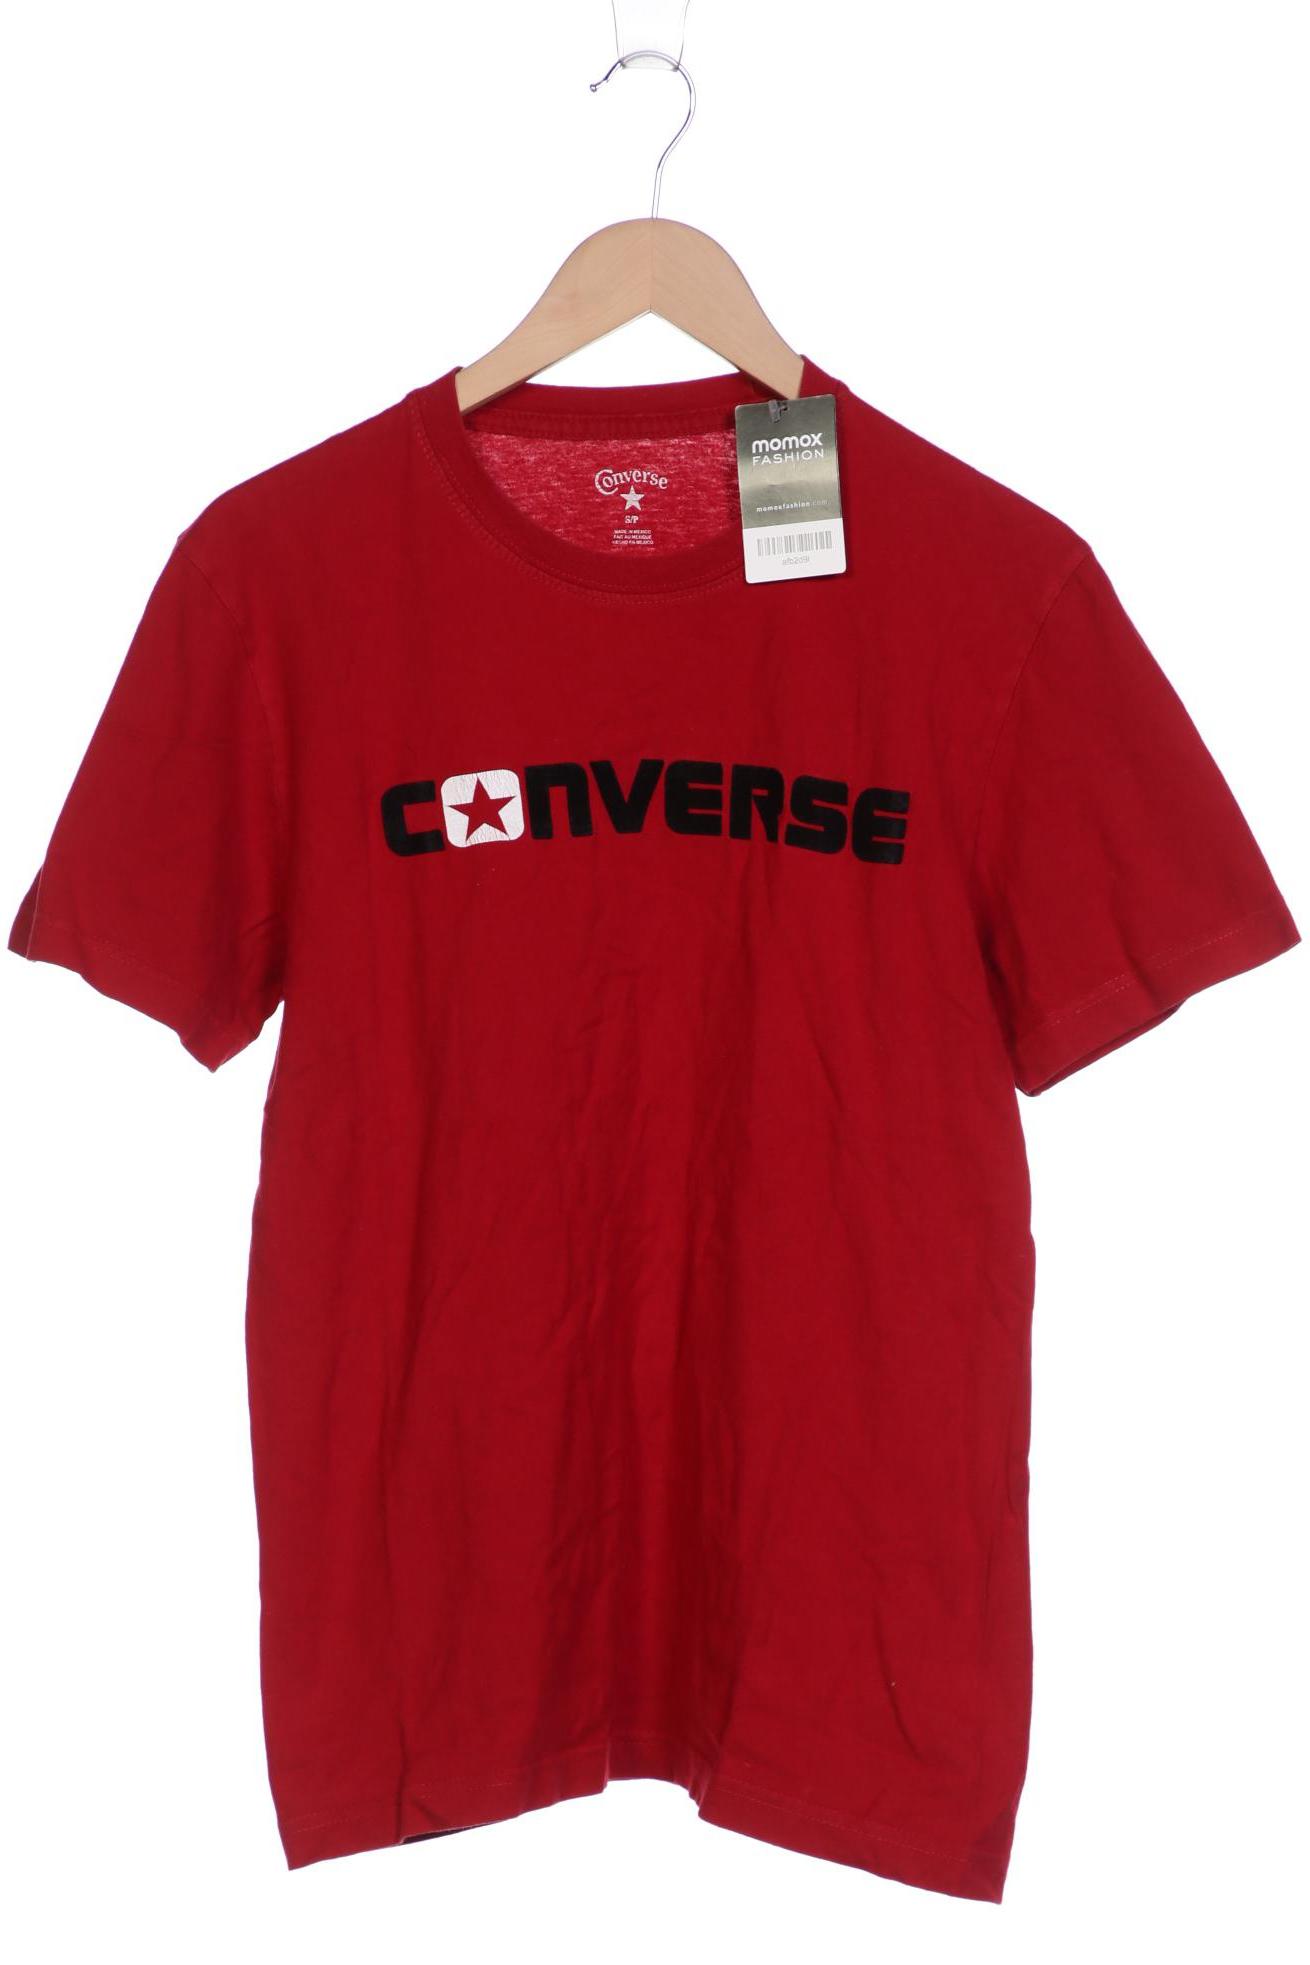 Converse Herren T-Shirt, rot von Converse